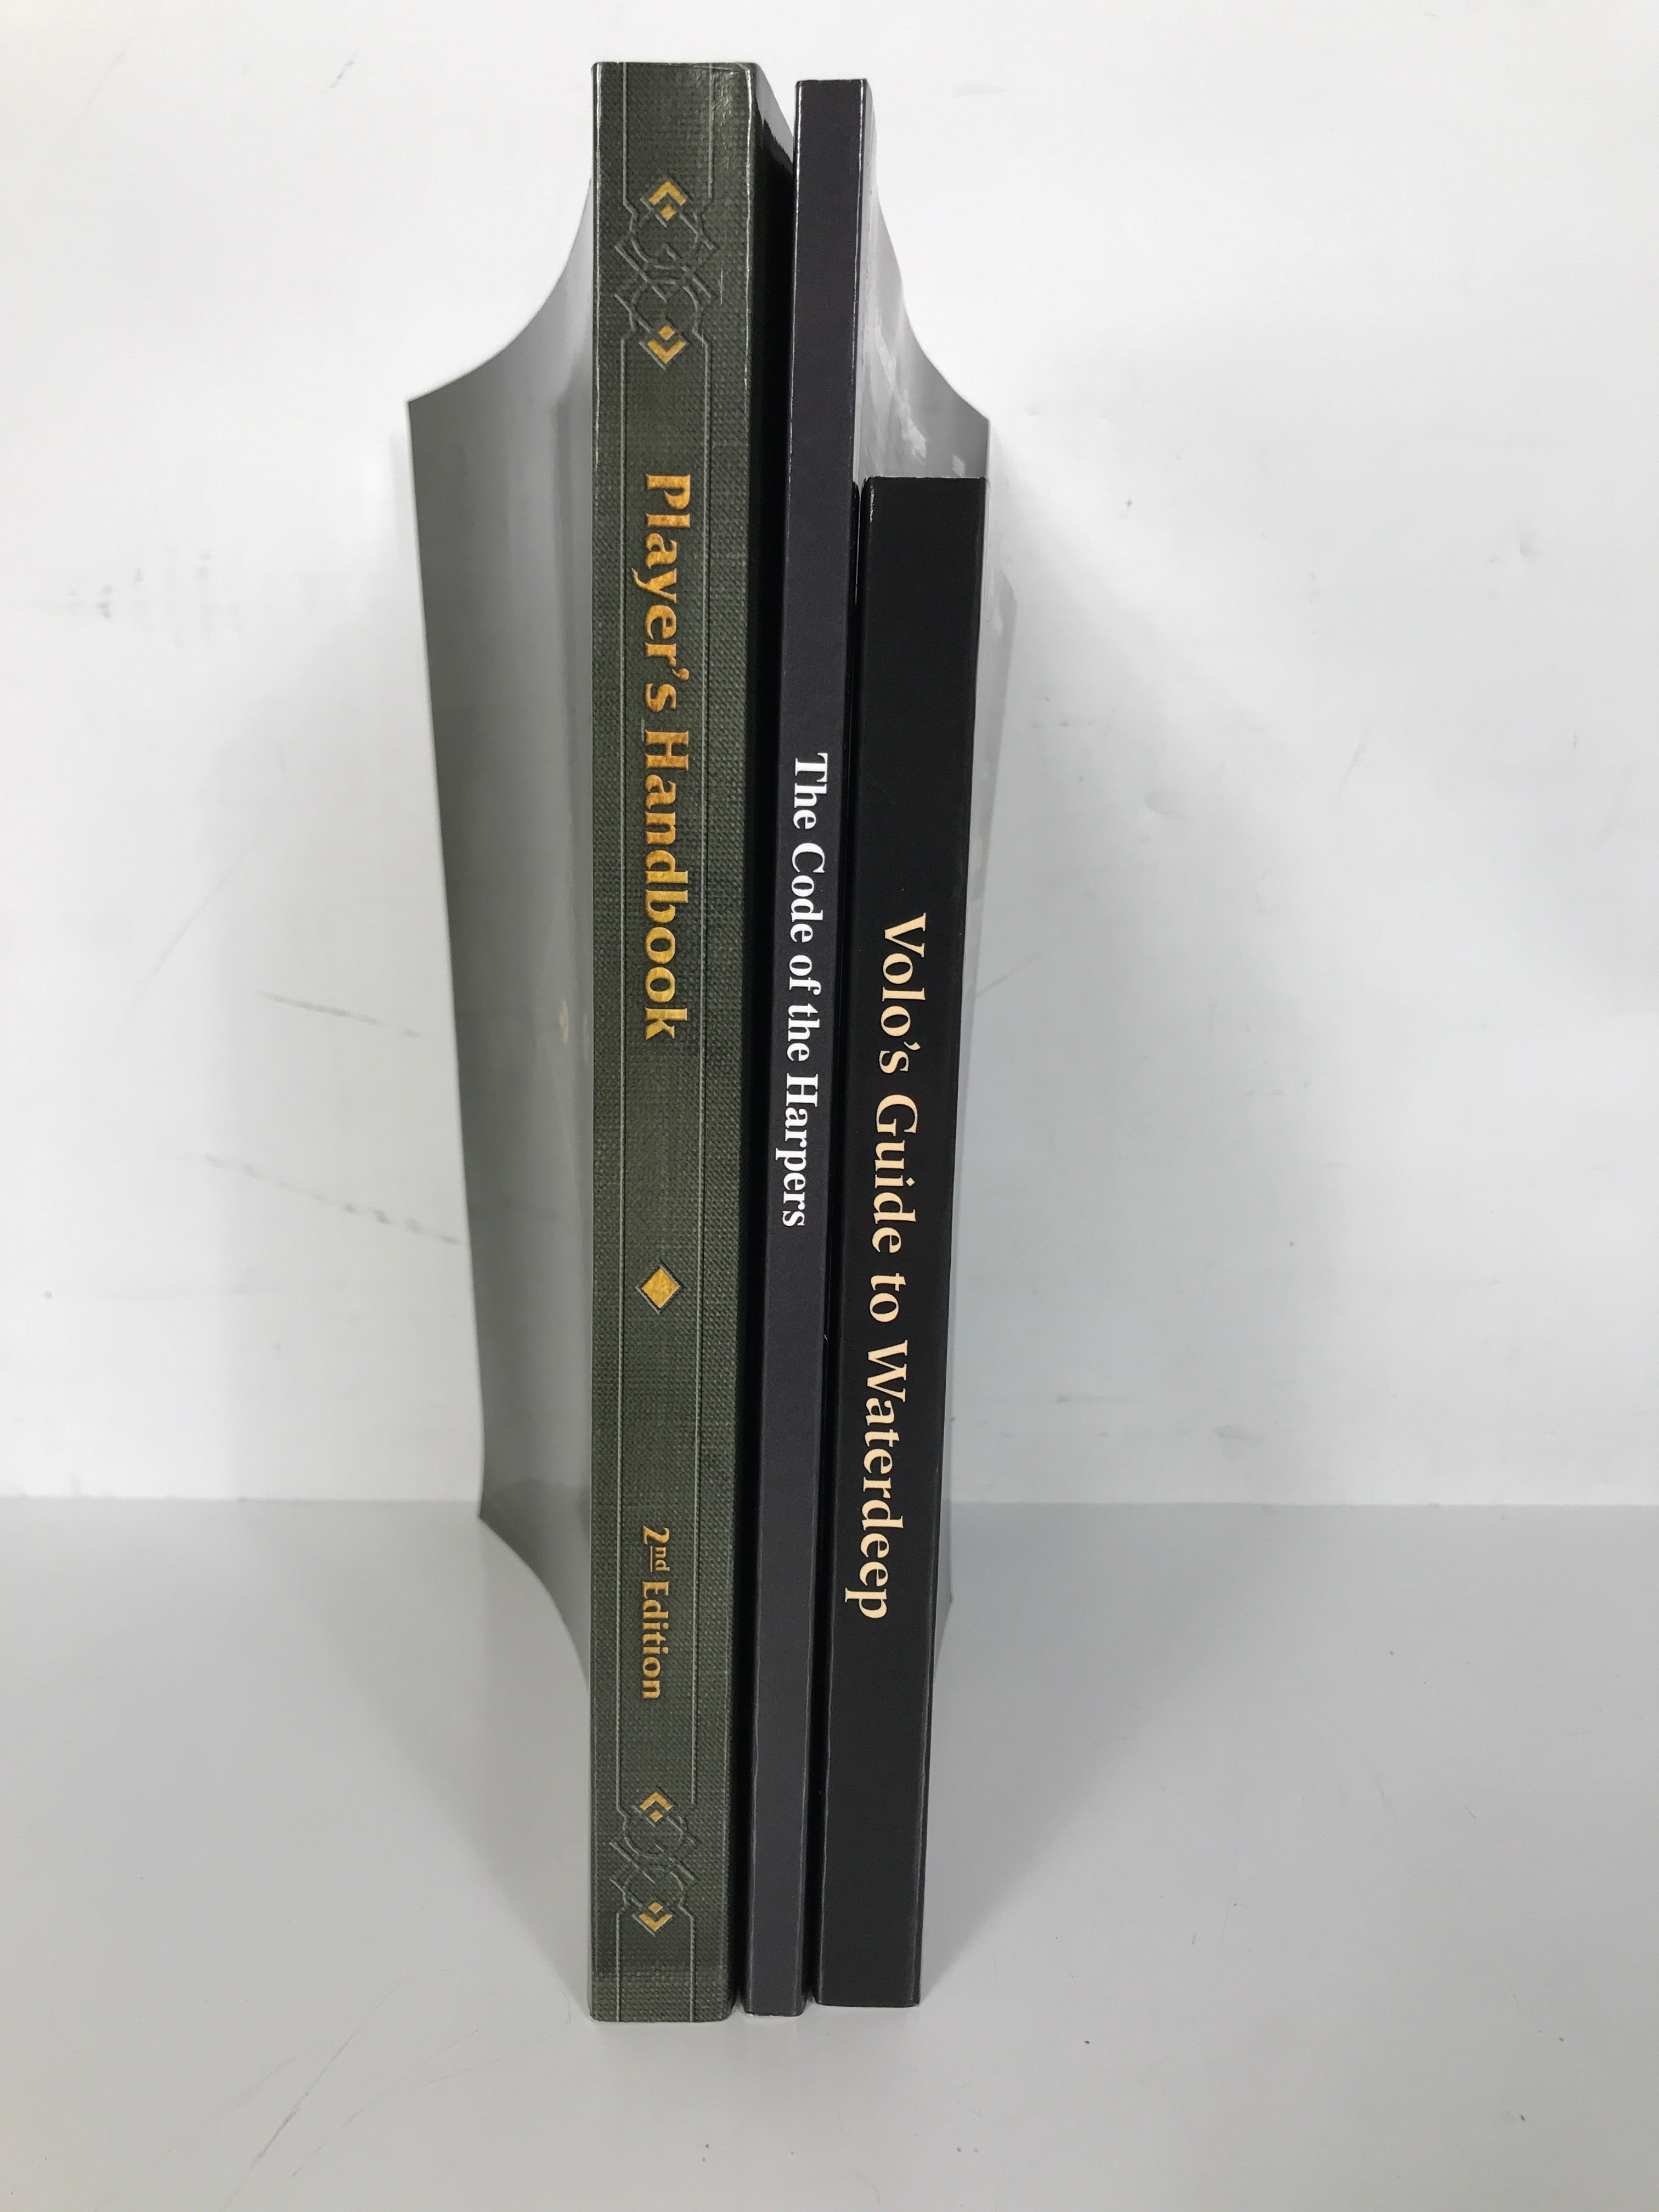 Lot of 3 2nd Edition Advanced D&D Vols 1992-2013 SC Handbook, Waterdeep, Harpers